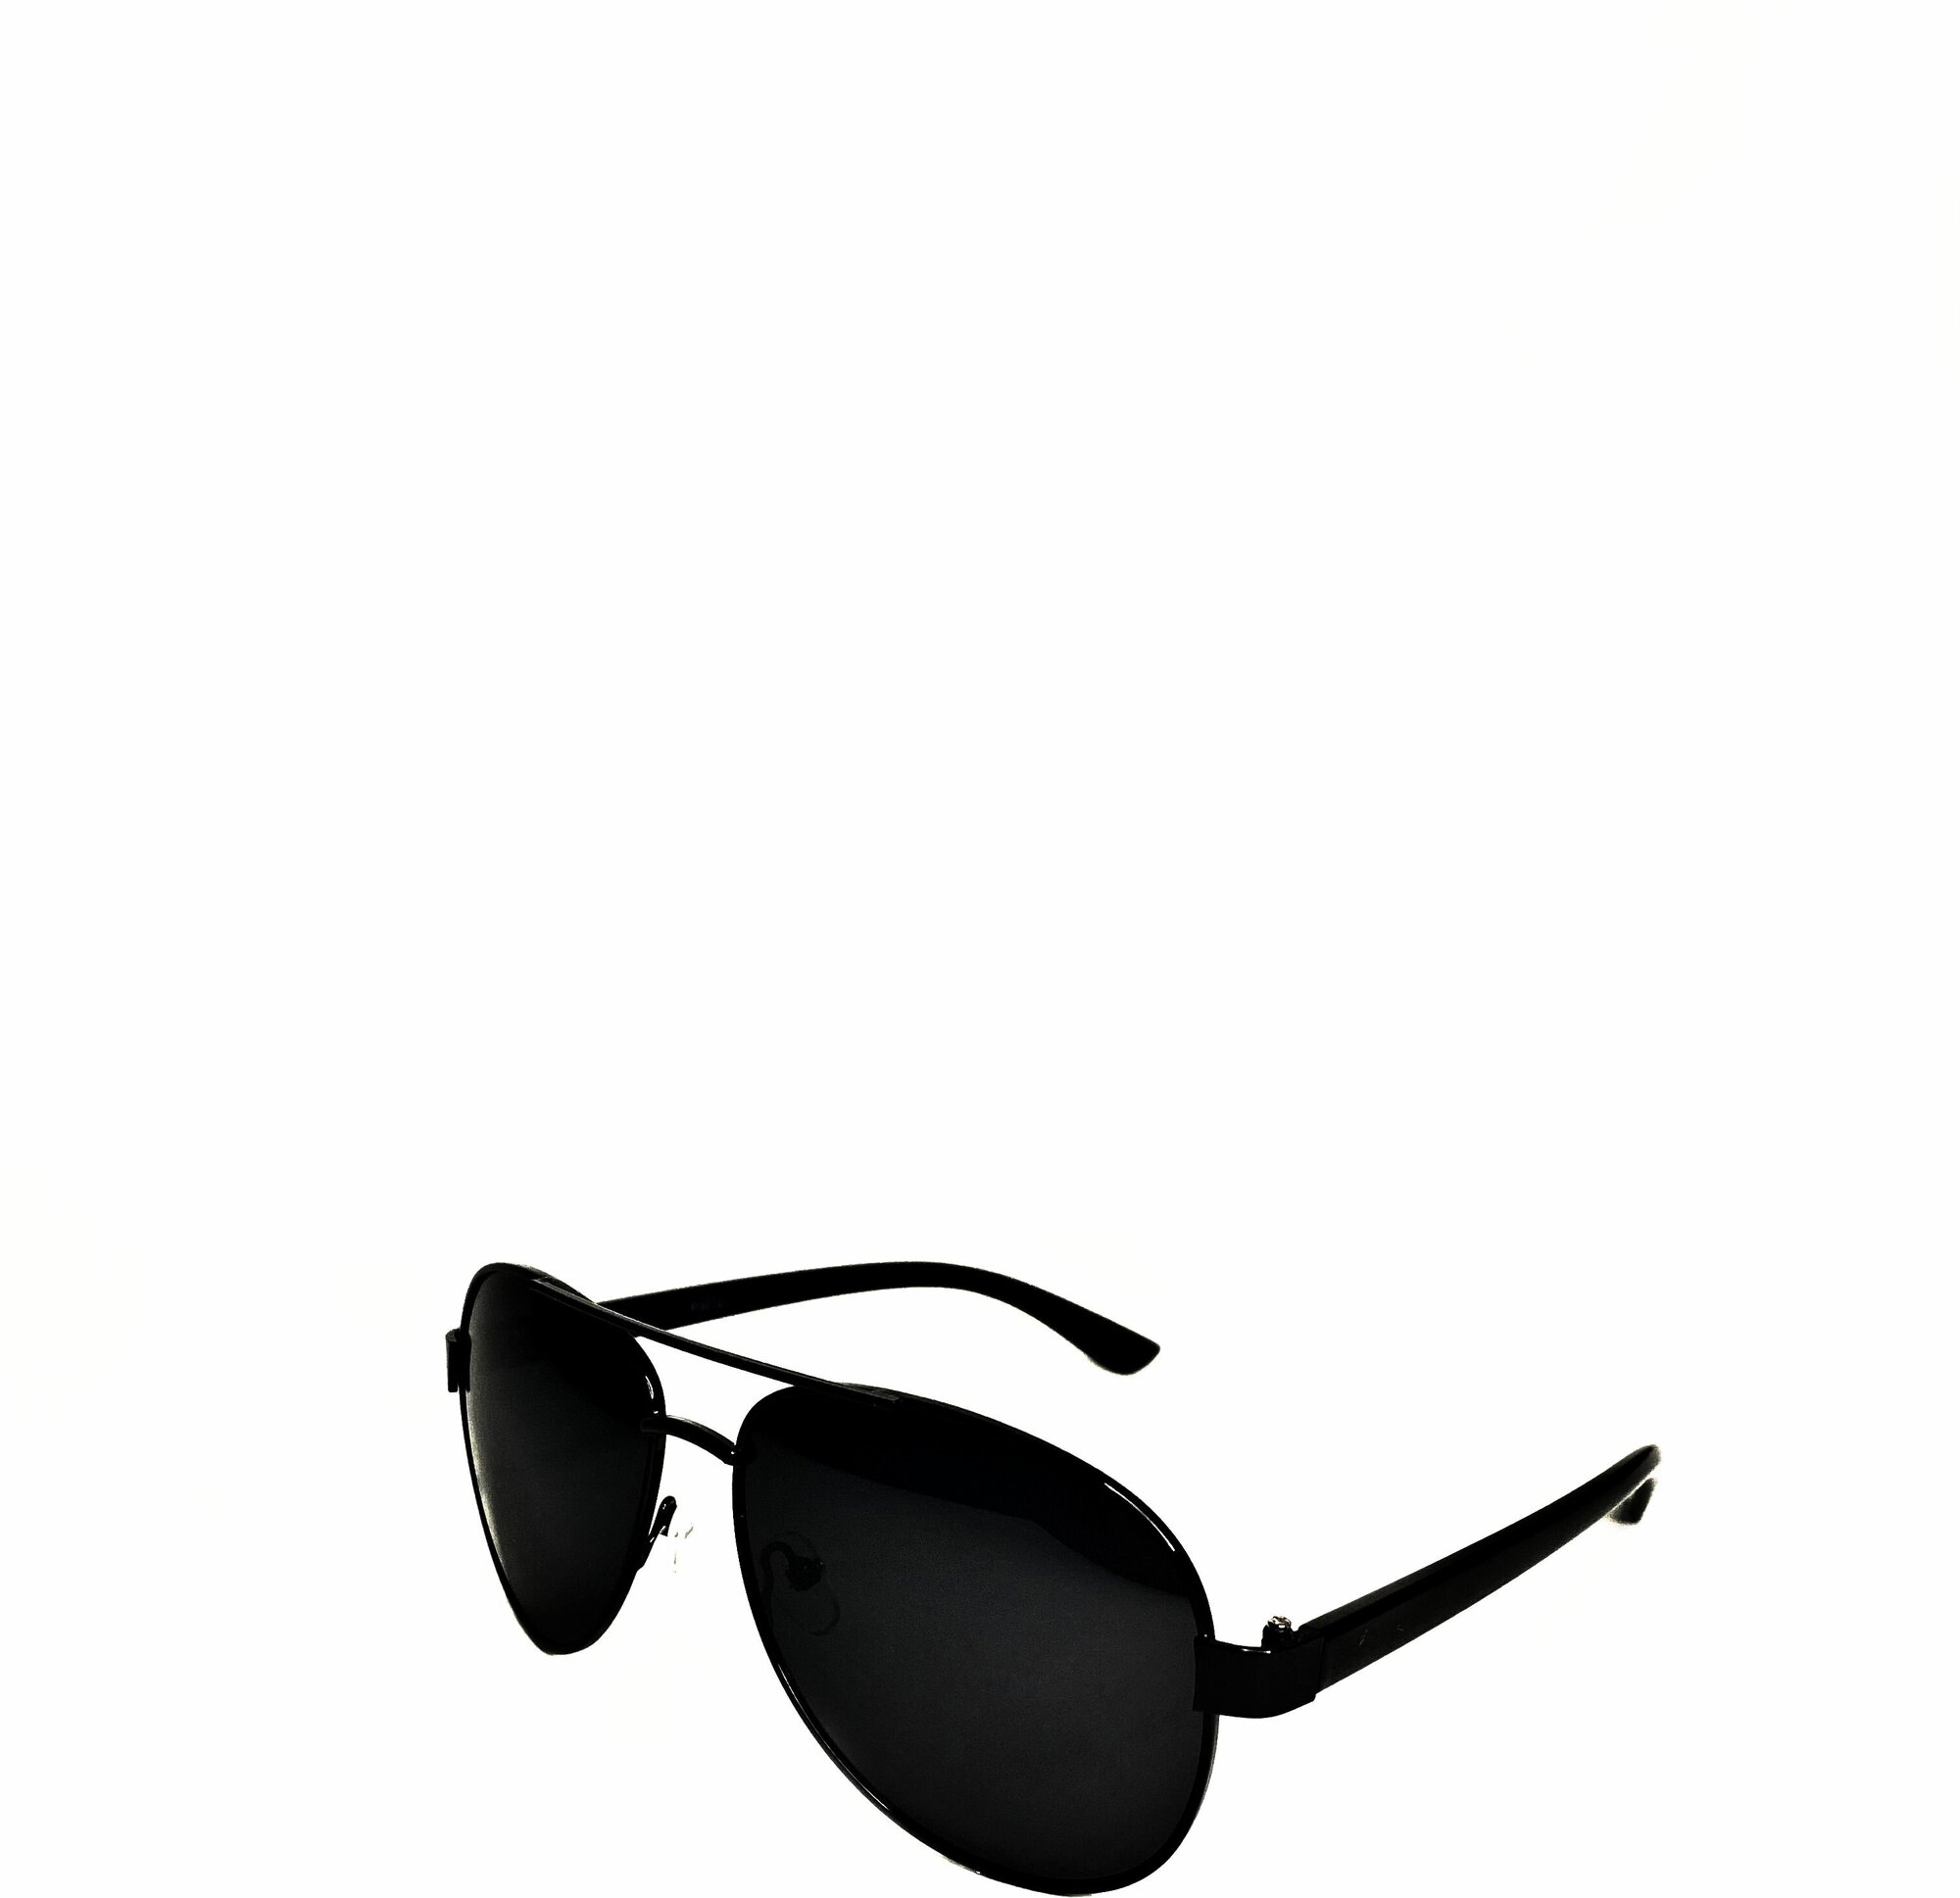 In Touch / Солнцезащитные очки мужские / Авиаторы / Поляризация / Защита от ультрафиолета UV400 / Коллекция 2023 Aviator черные